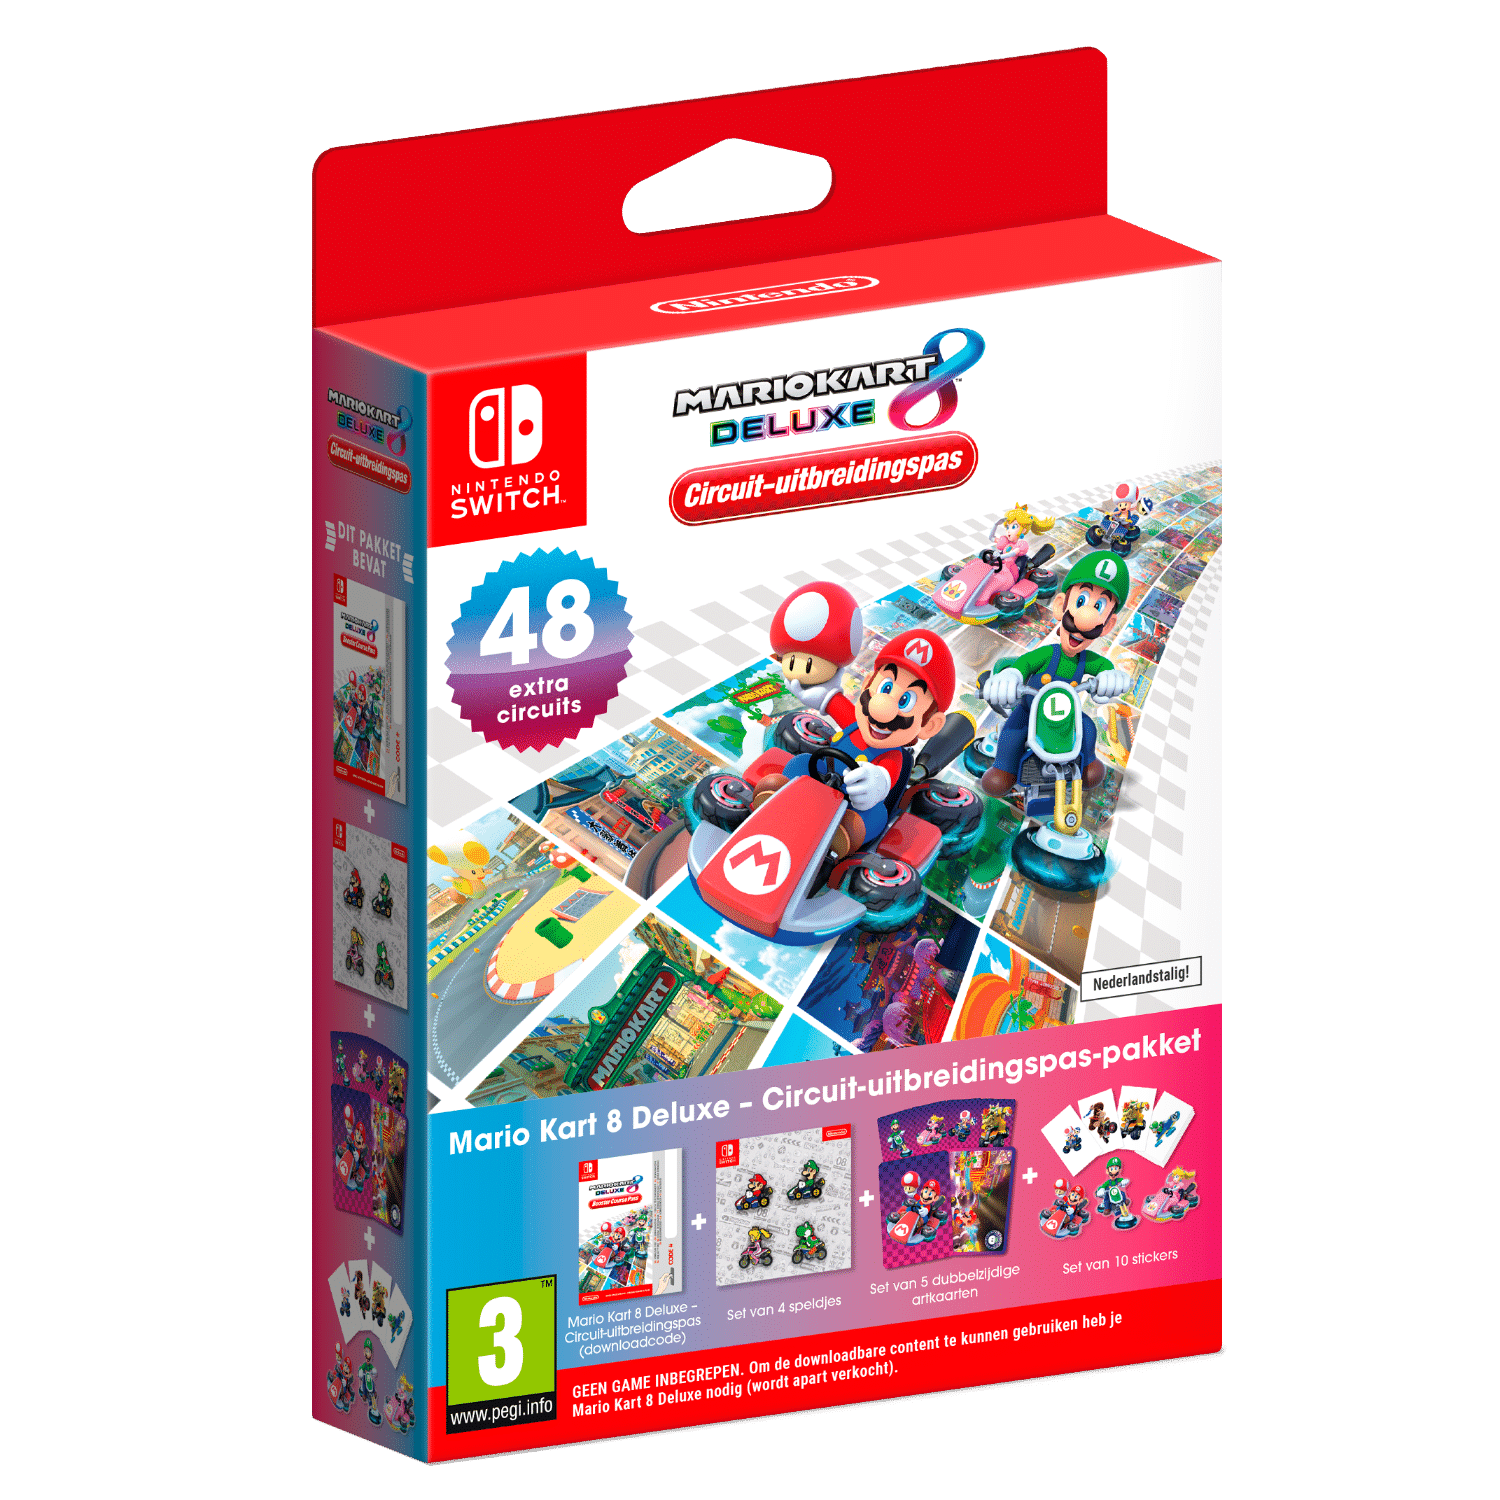 Nintendo Mario Kart 8 Deluxe - Game uitbreiding incl. Goodies (Download) (Switch)